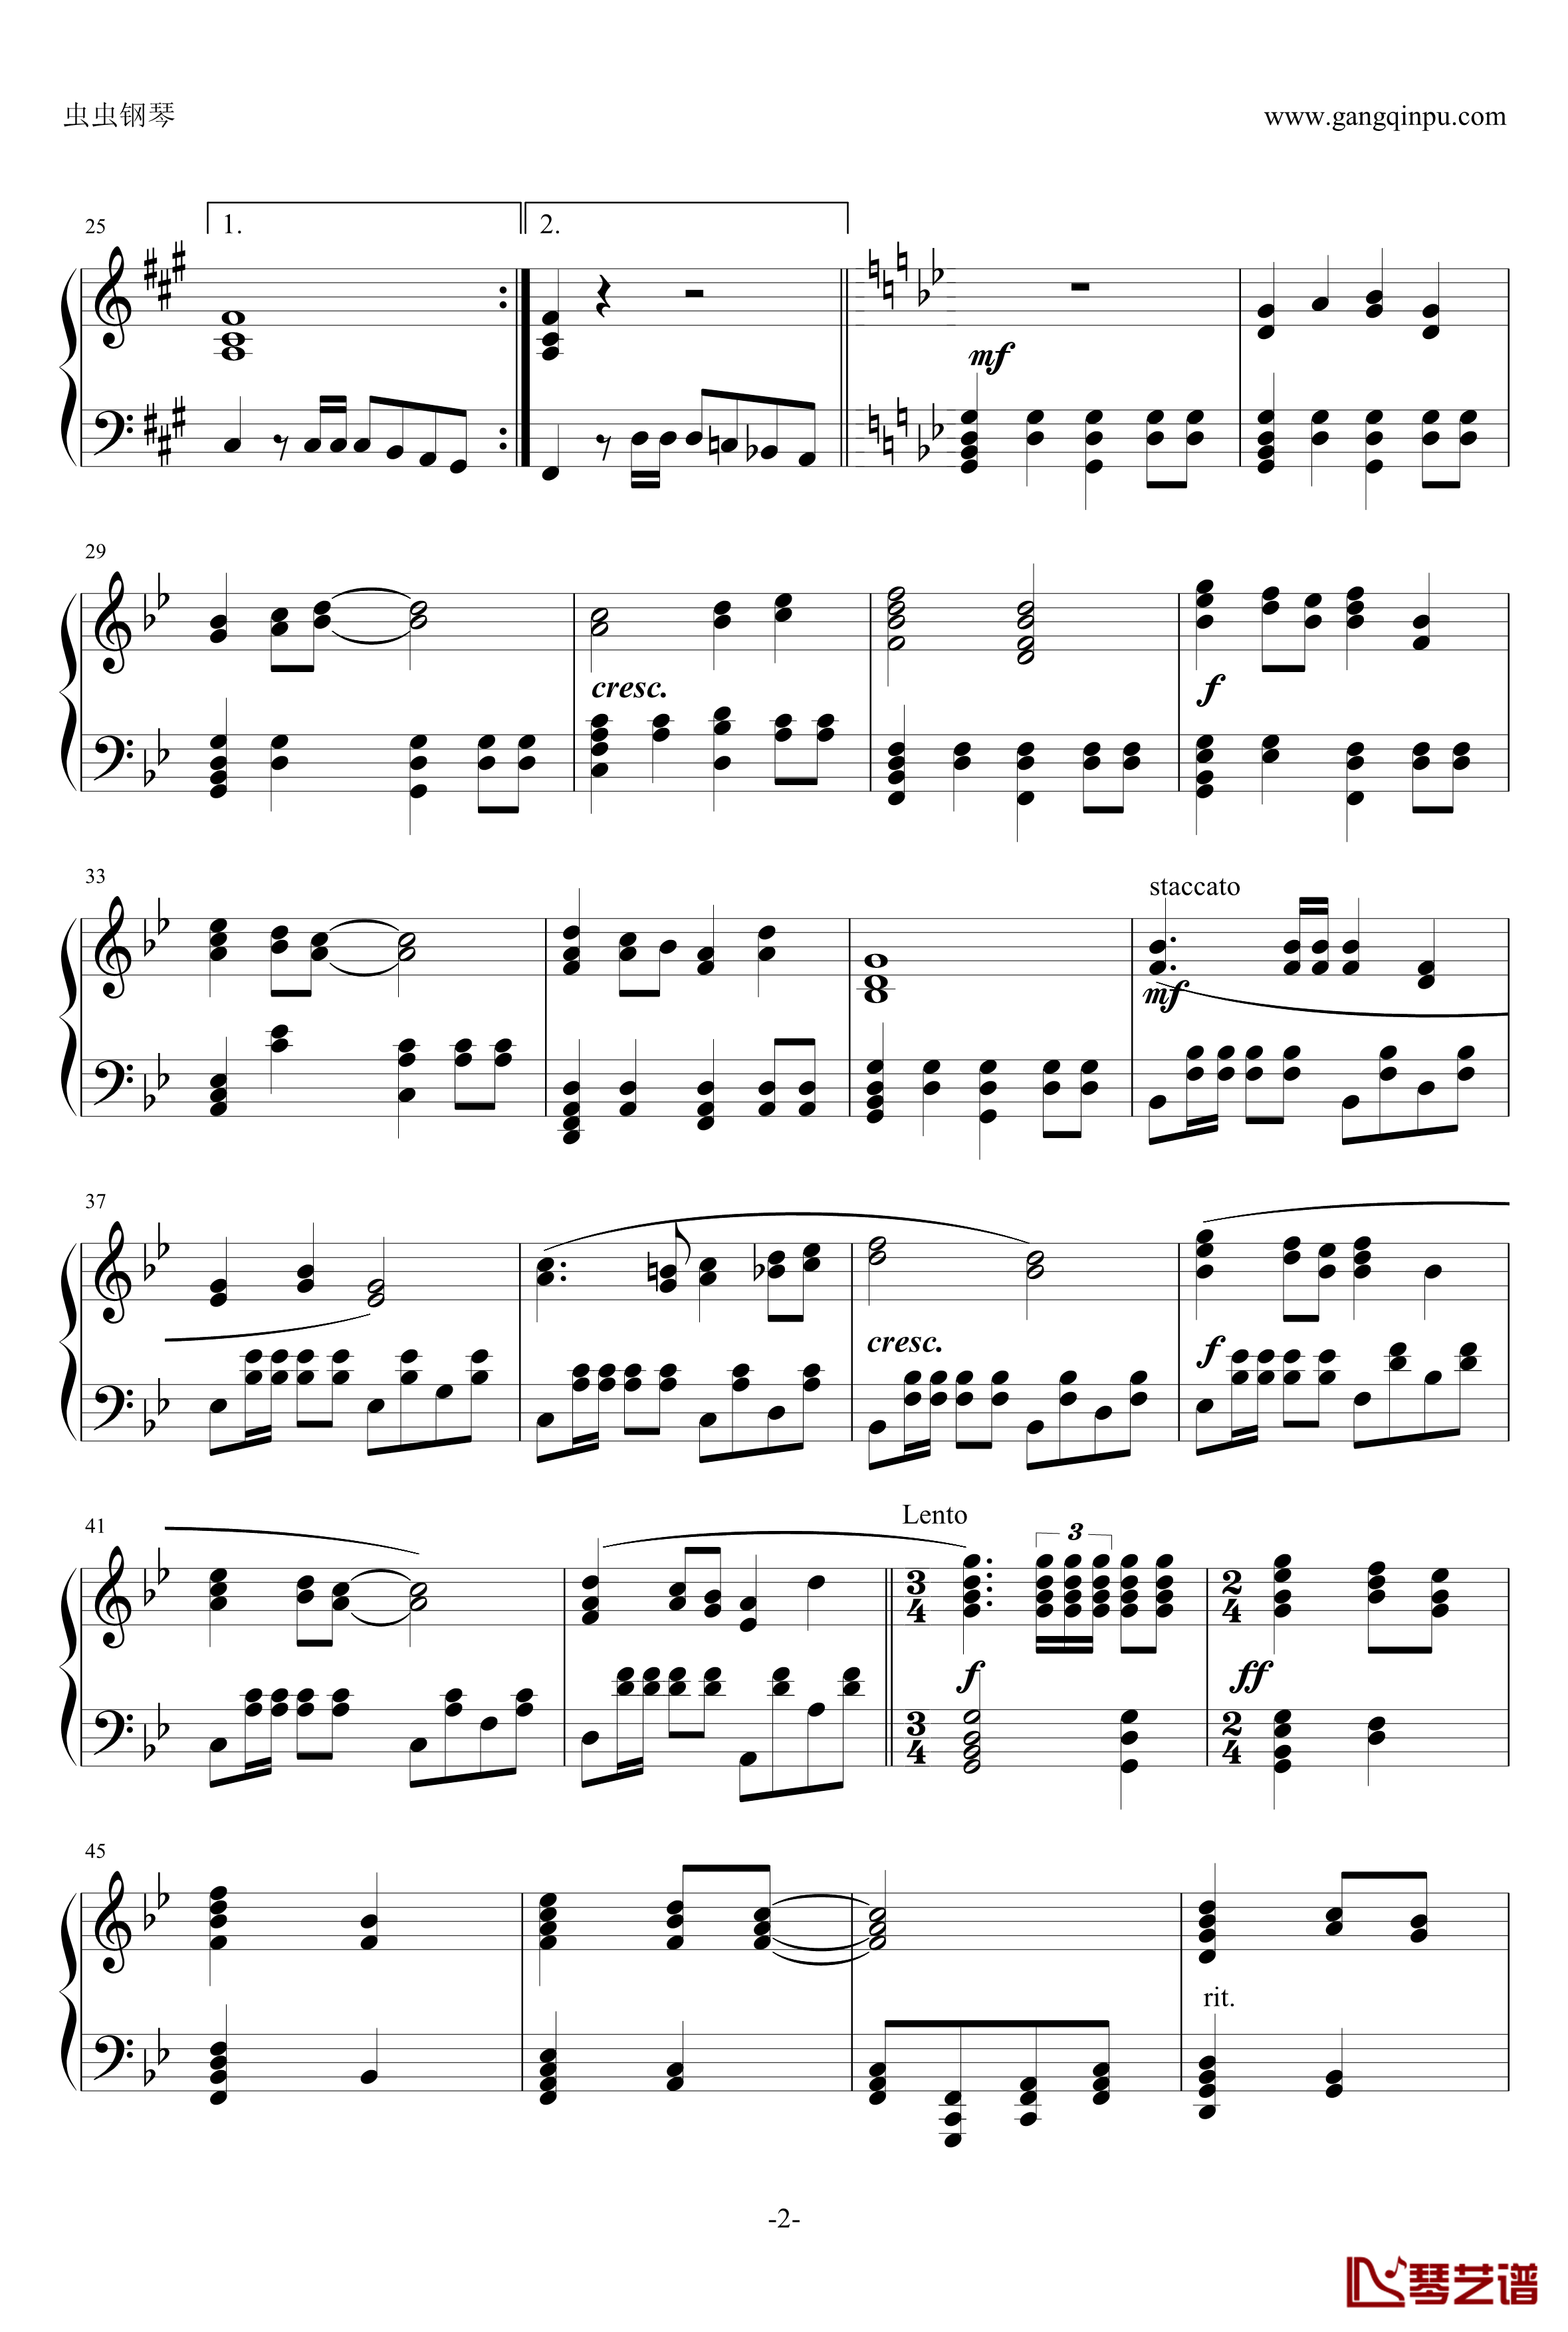 朝鲜红歌-我们发誓钢琴谱-作于1963年-朝鲜歌曲2